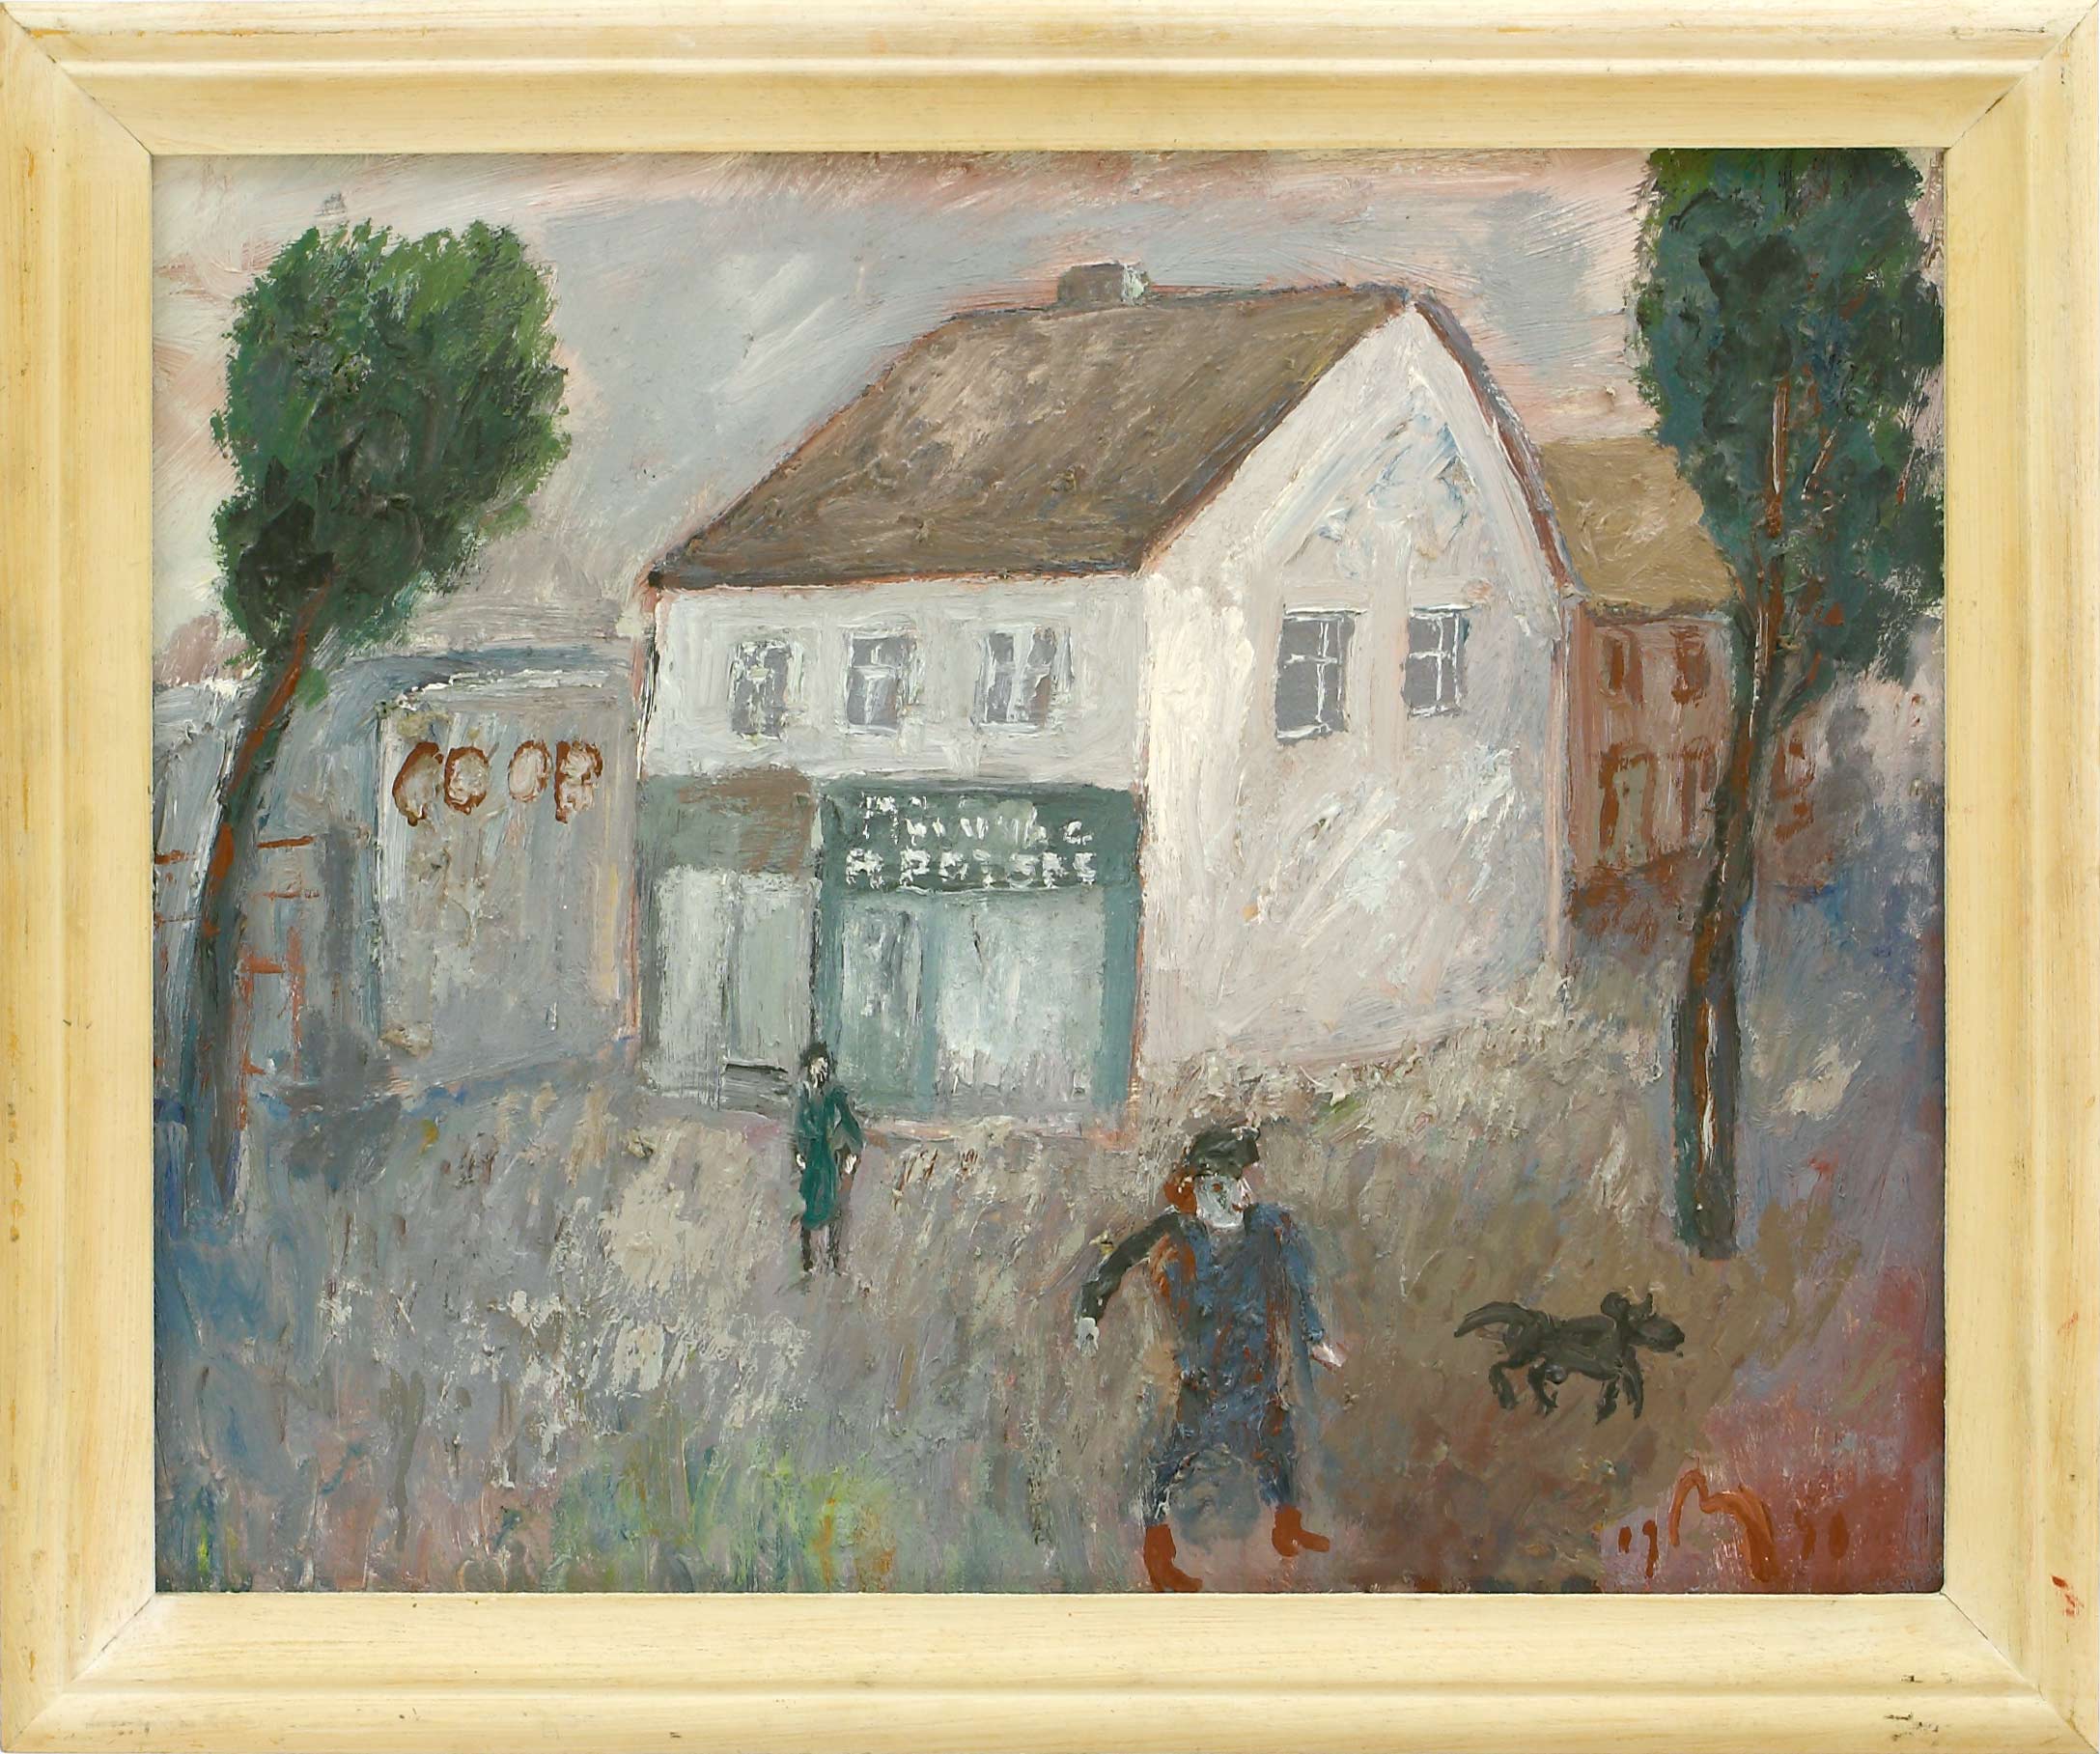 Auktionshaus Quentin Berlin  Gemälde MÃ¼hlenhaupt  Kurt  fÃ¼r Hannelore zum Geburtstag die kleine Apotheke. 1990